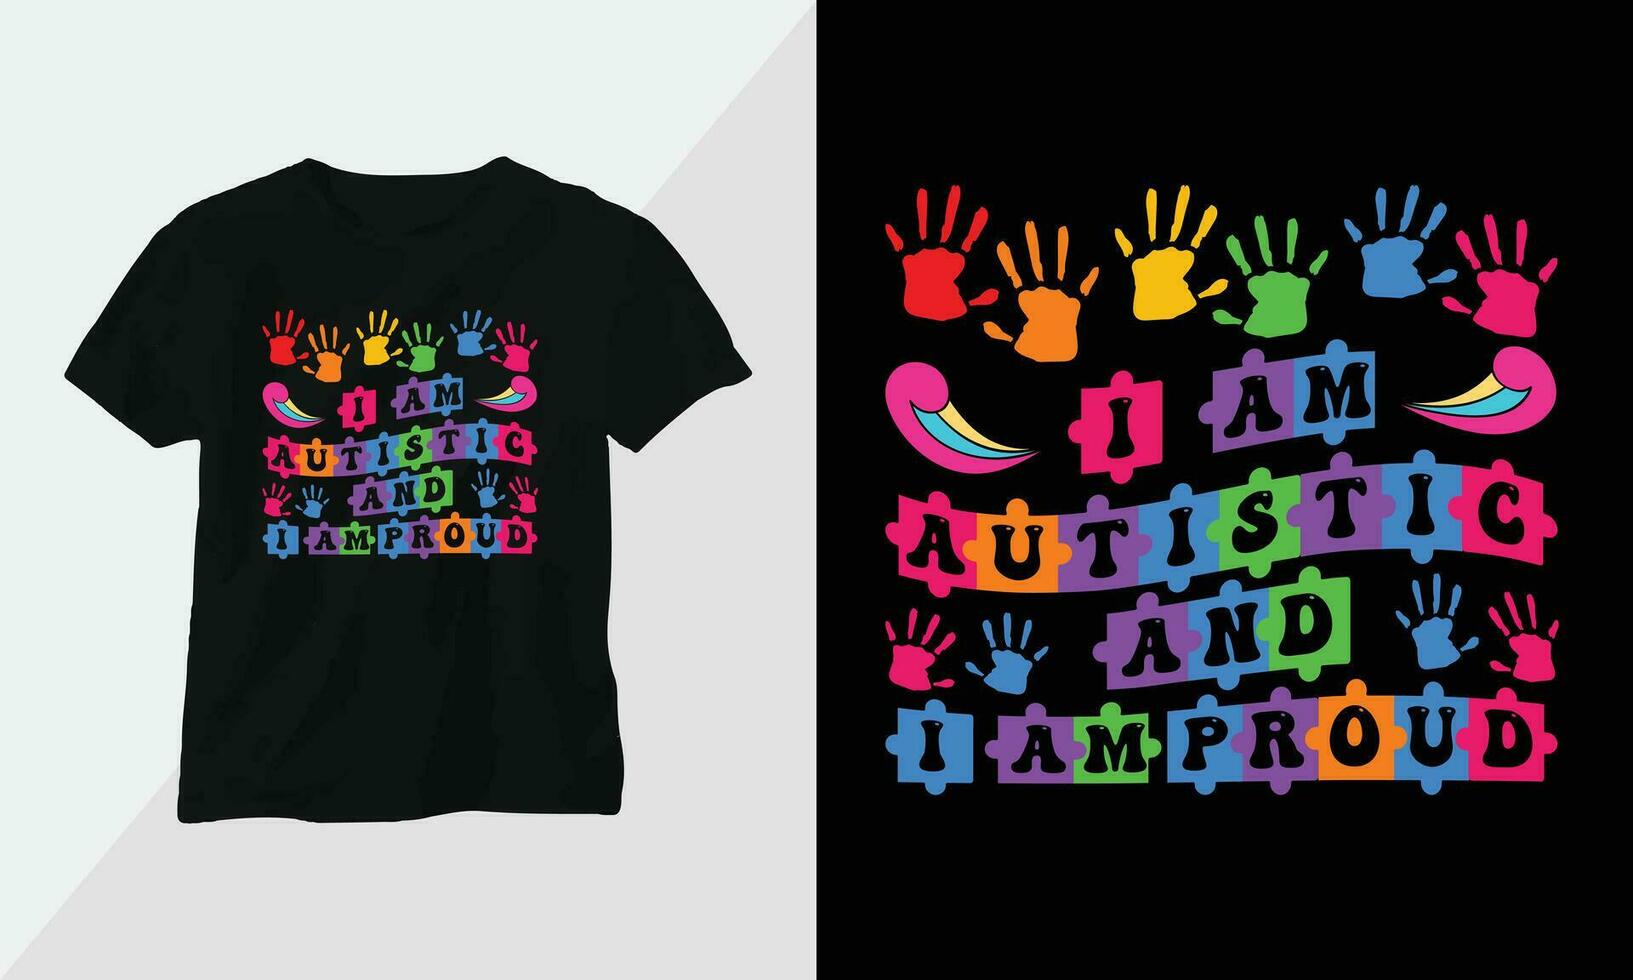 autism t-shirt design begrepp. Allt mönster är färgrik och skapas använder sig av band, pussel, kärlek, etc vektor